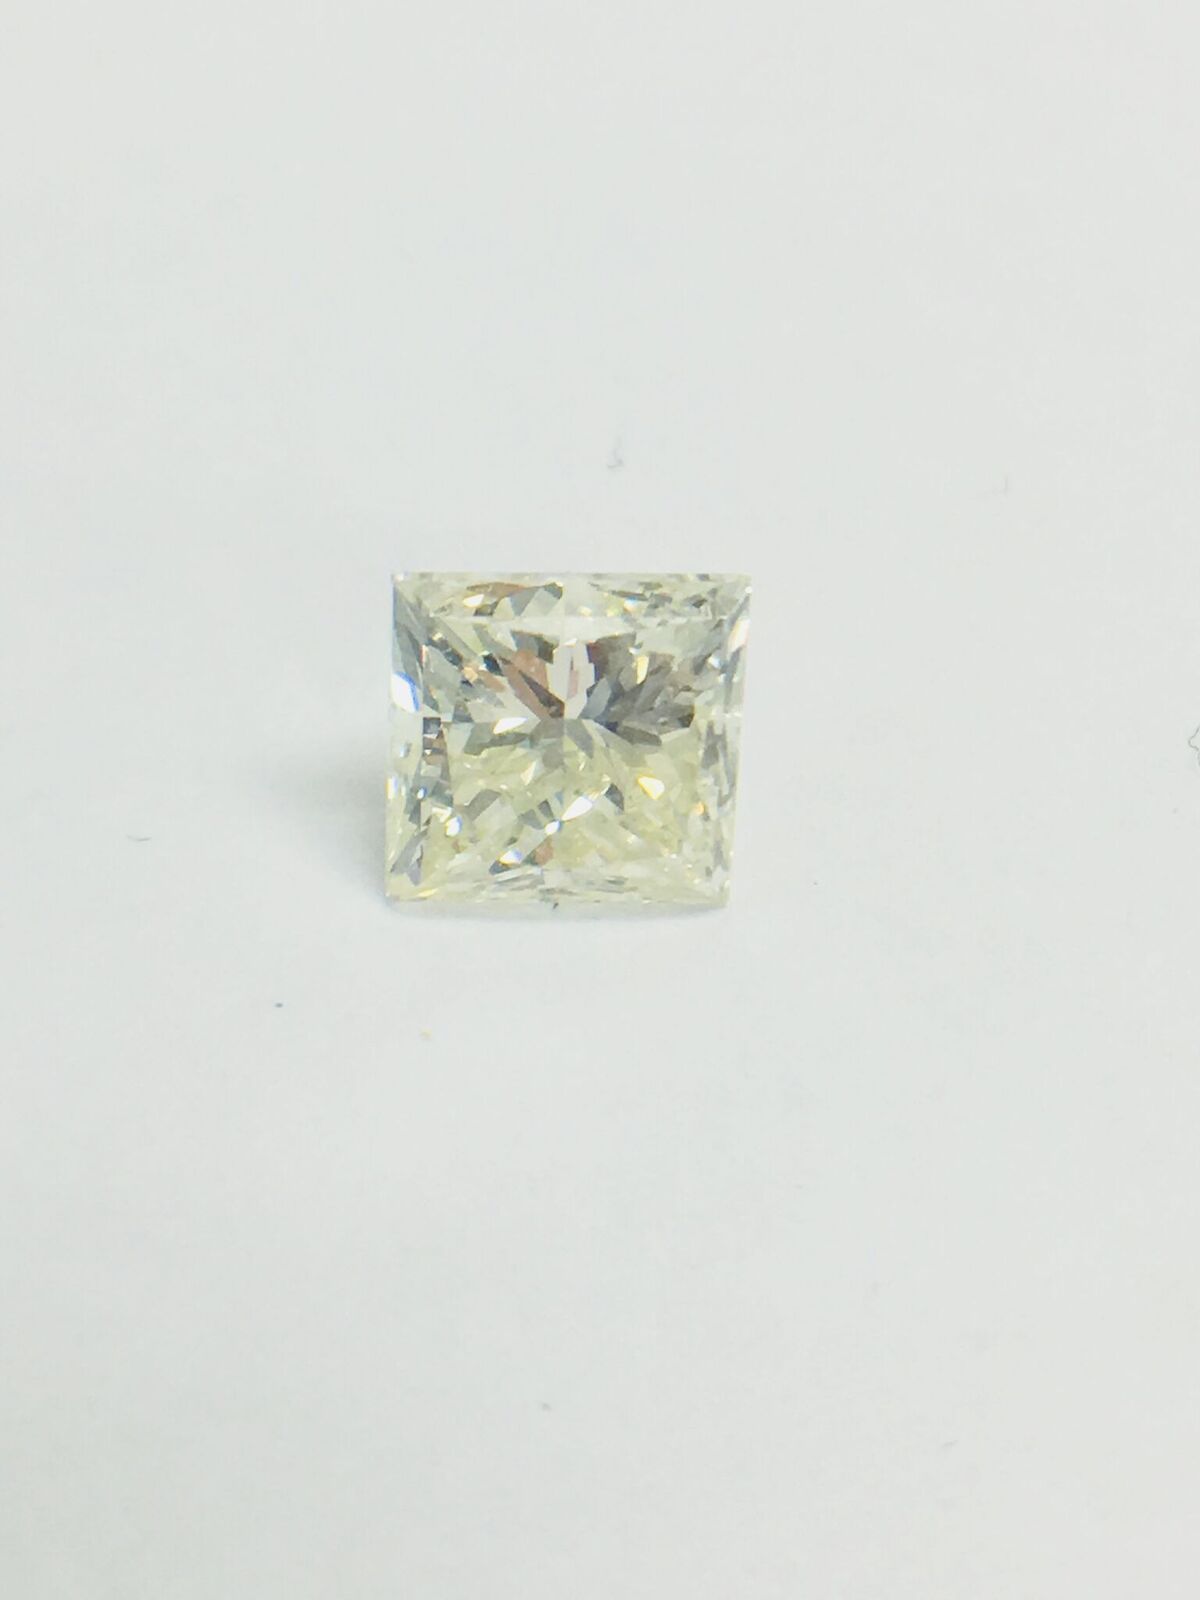 1ct Princess cut Diamond - Image 7 of 35